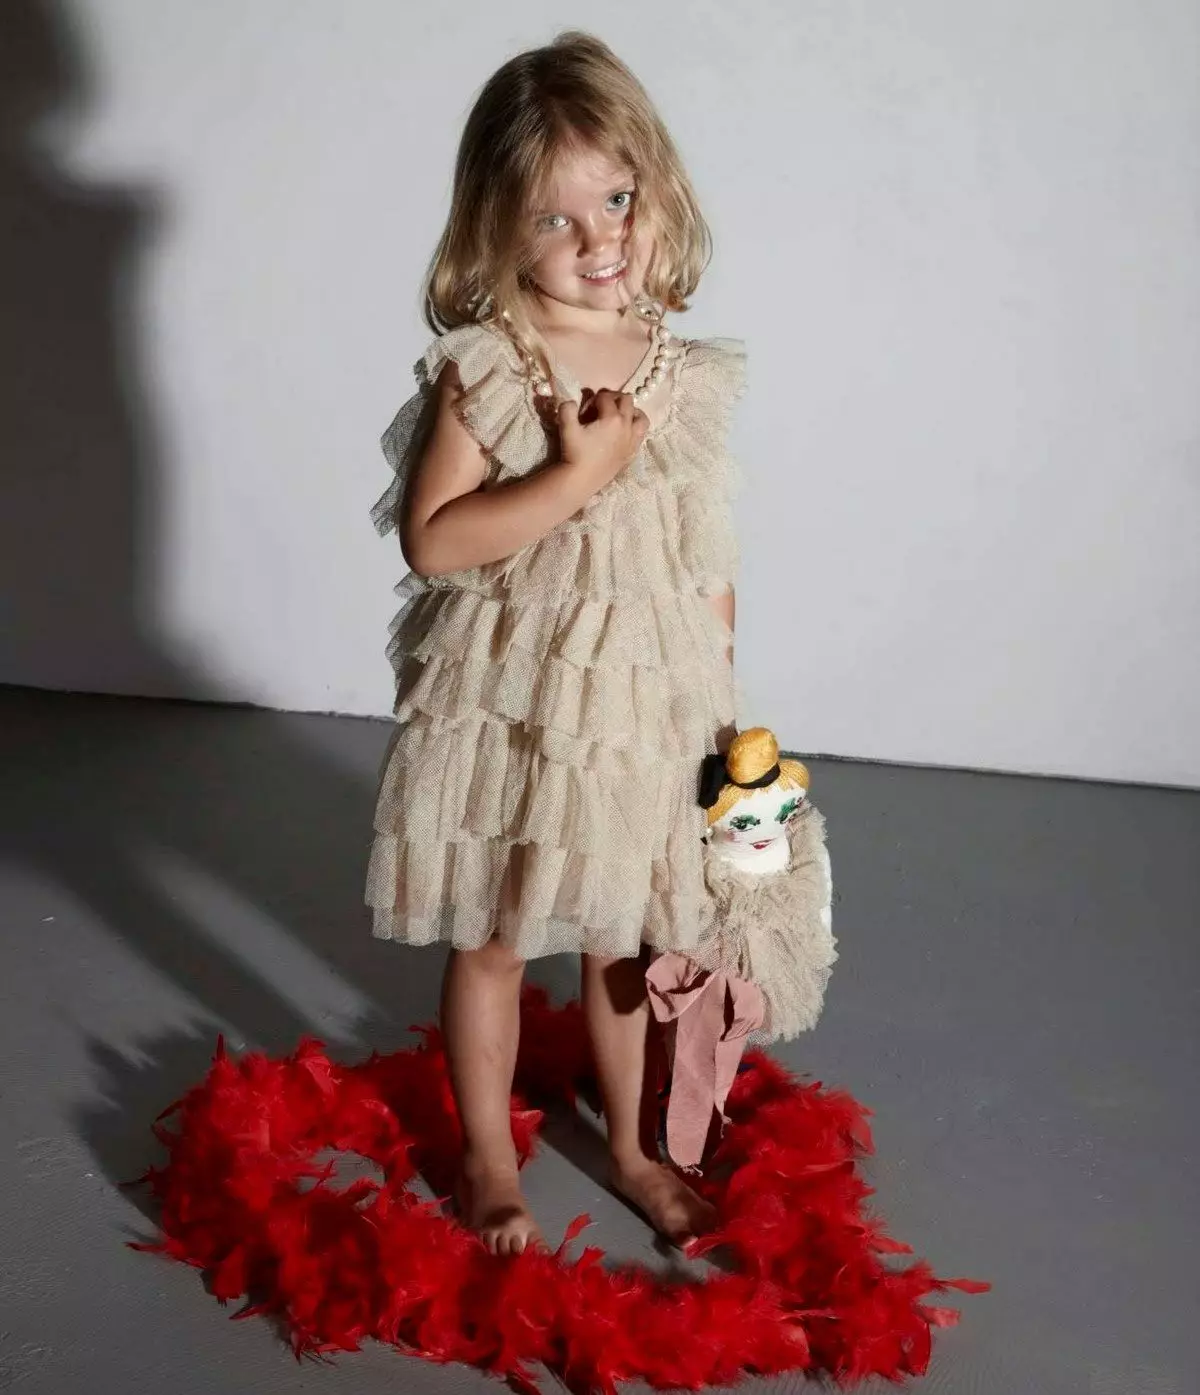 لباس زیبا برای دختر 4-5 ساله با قوها